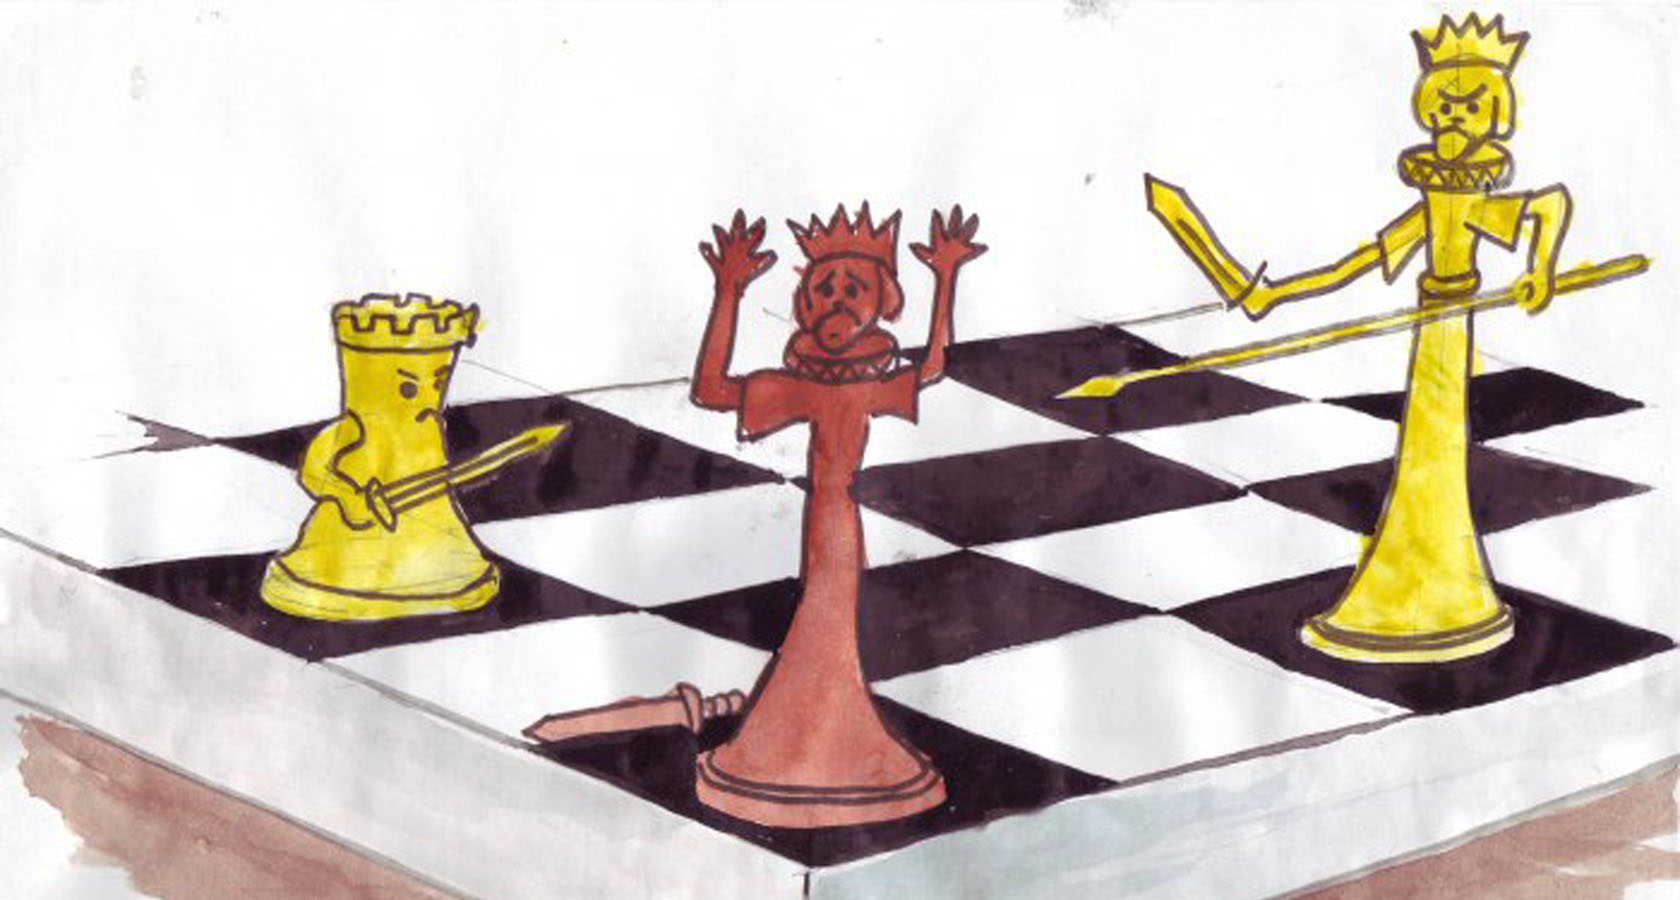 Рисунок на тему шахматы